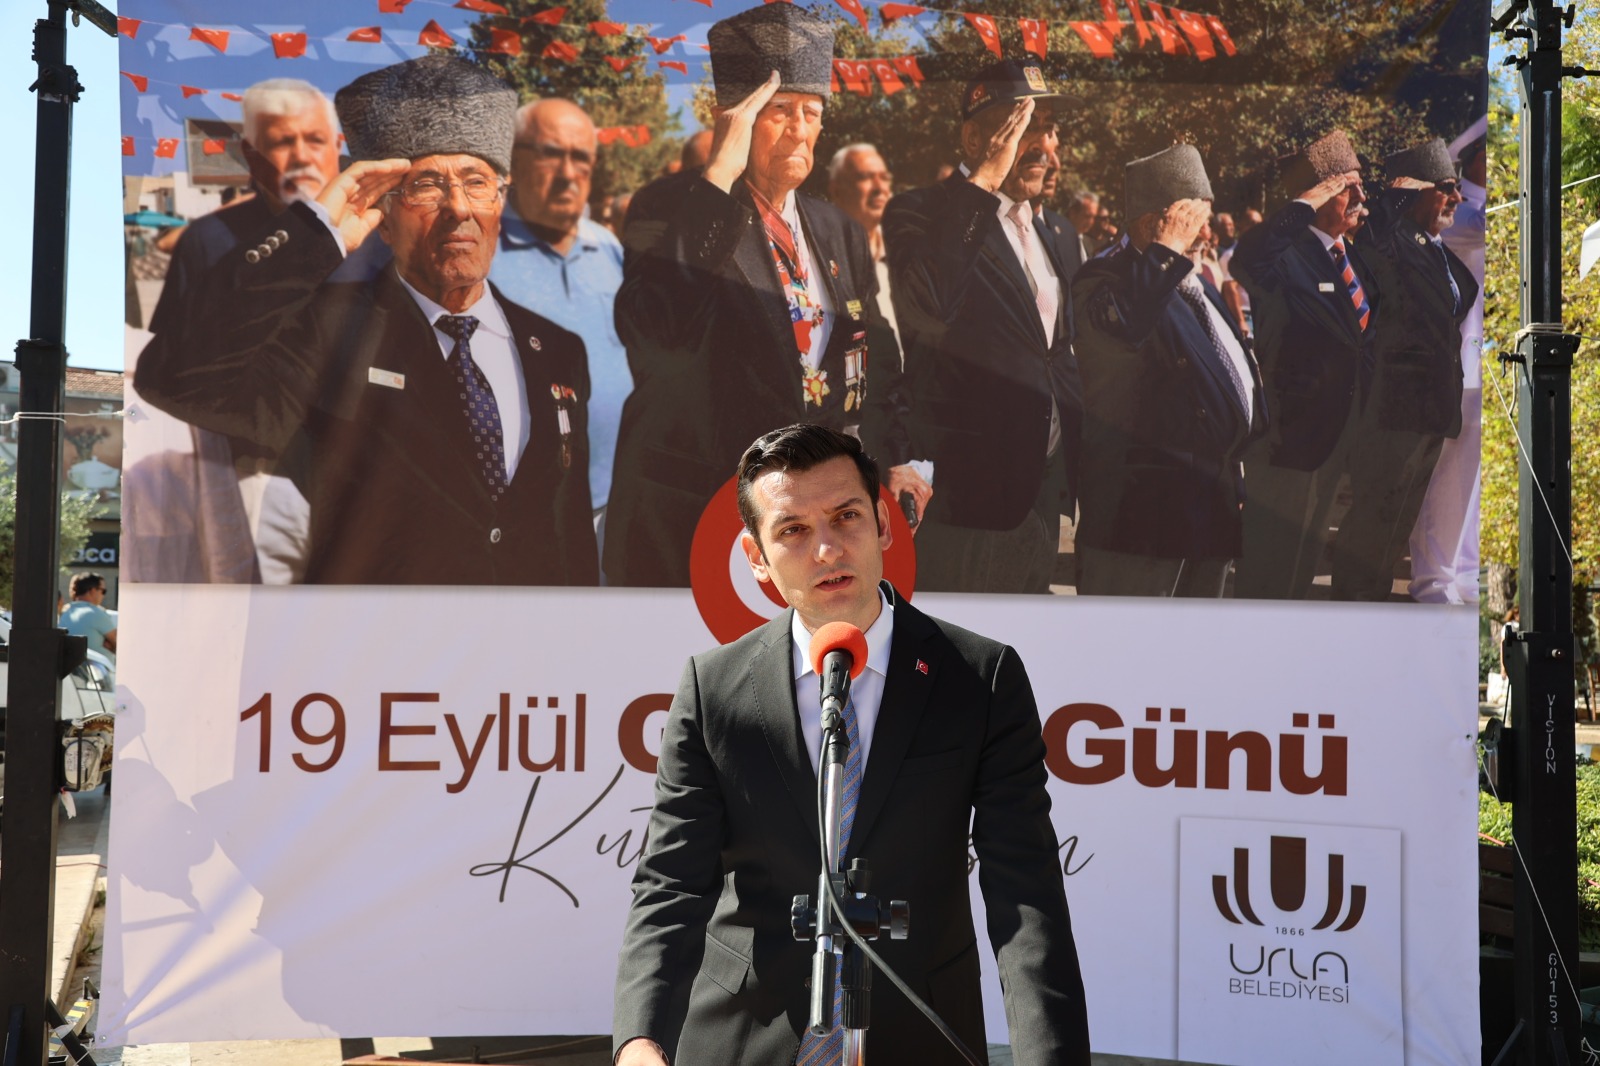 Urla Kaymakamı  ve Belediye Başkan Vekili Mustafa Gözlet